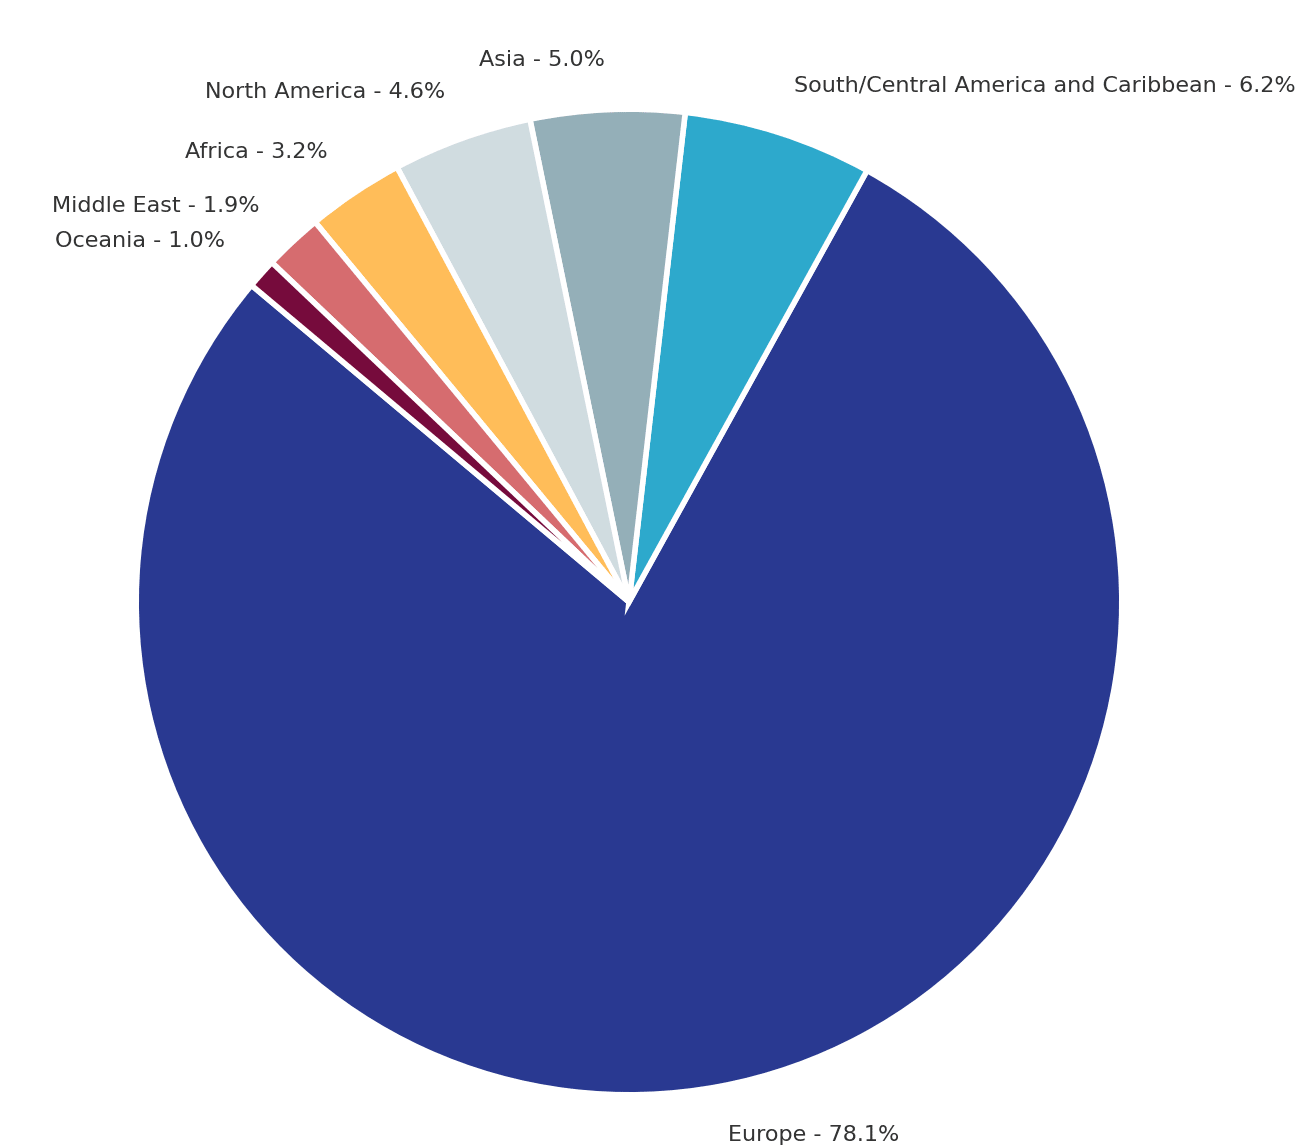 Survey respondents by region